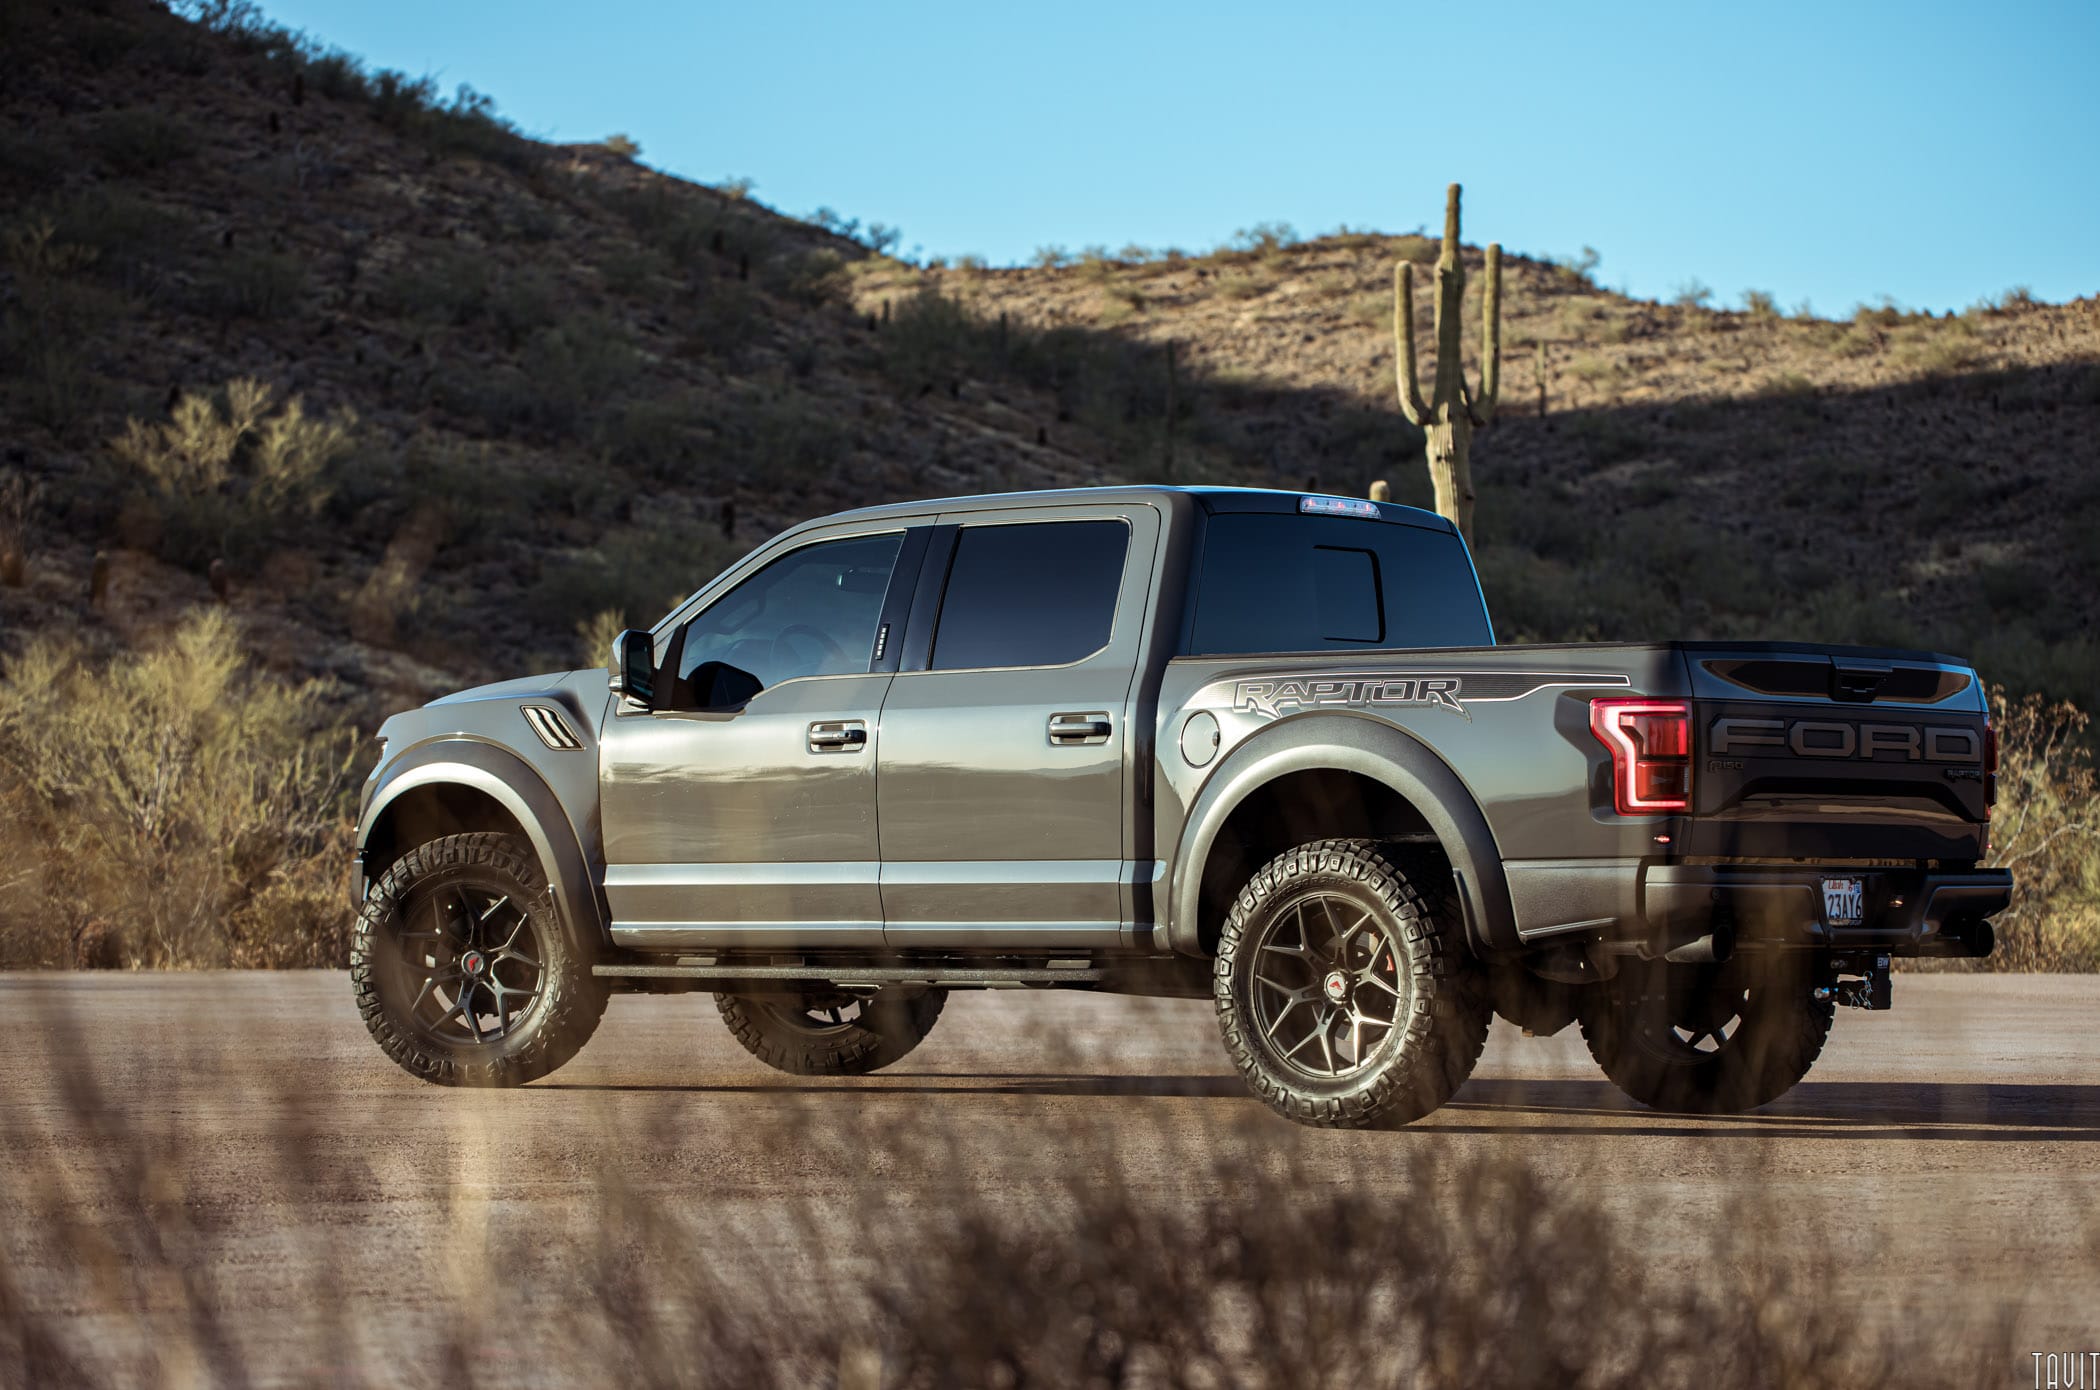 Side shot of Ford Raptor truck in desert